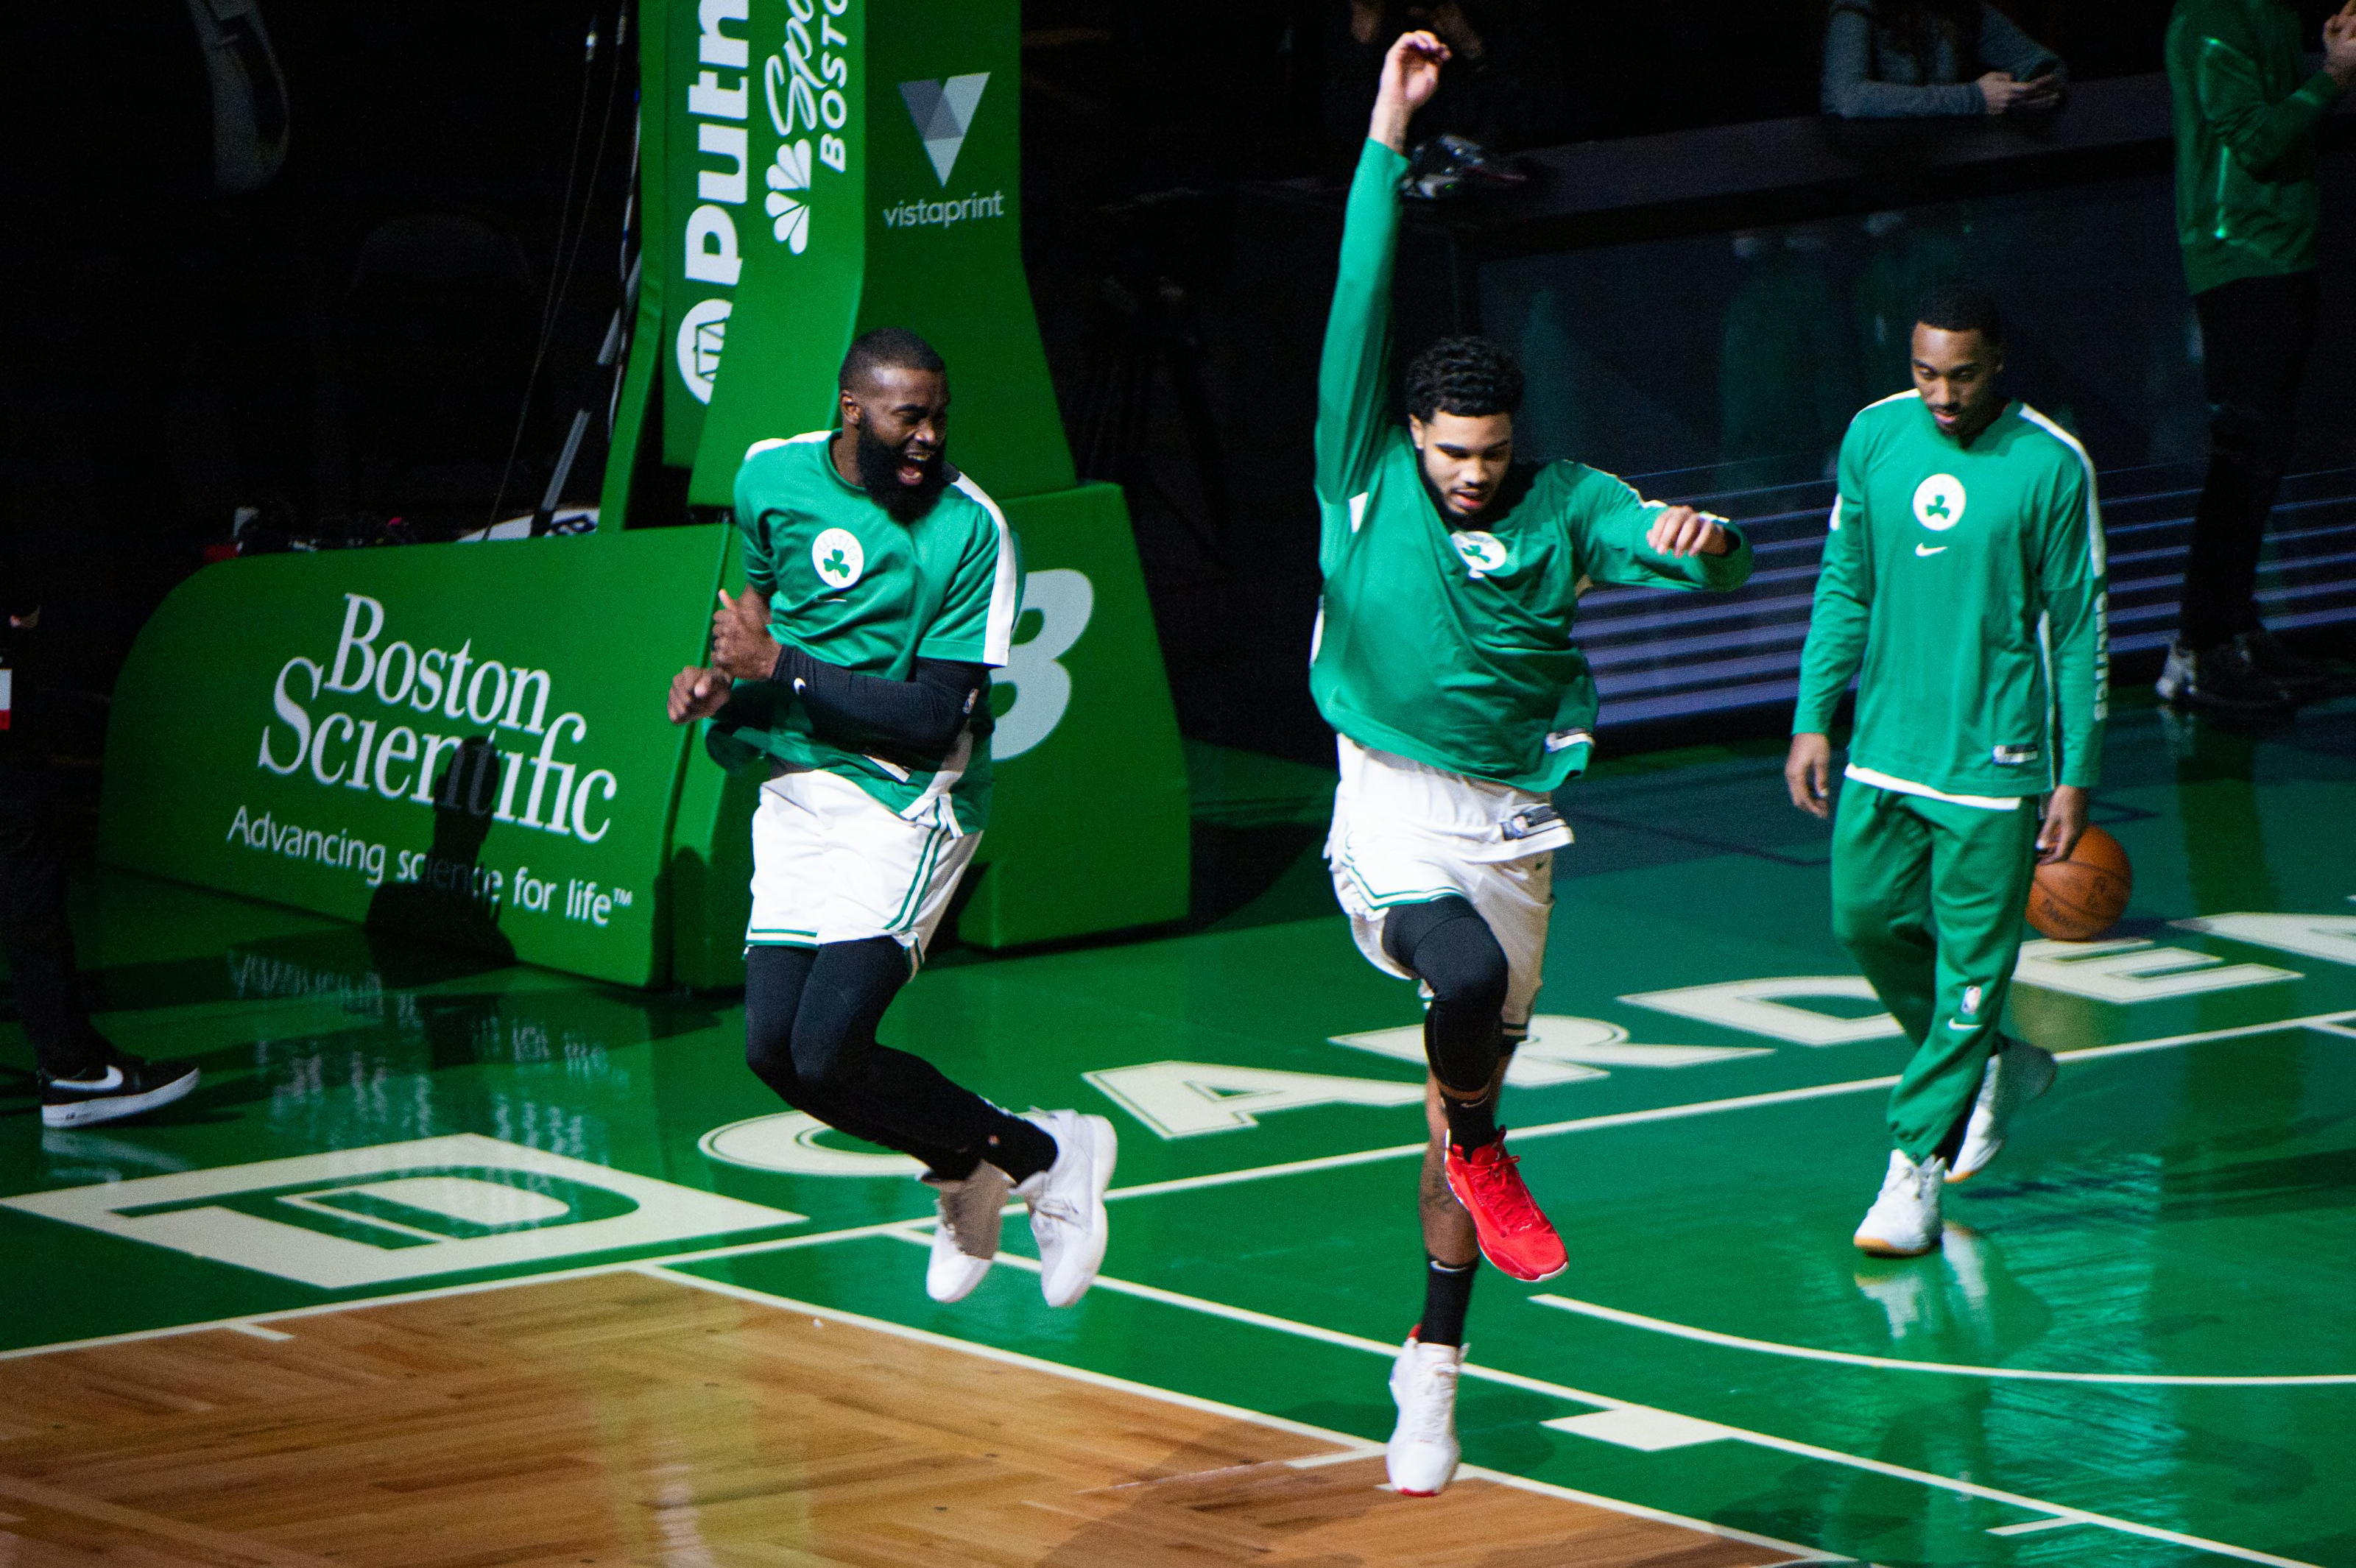 Boston Celtics Roster & Starting Lineup Against Pistons